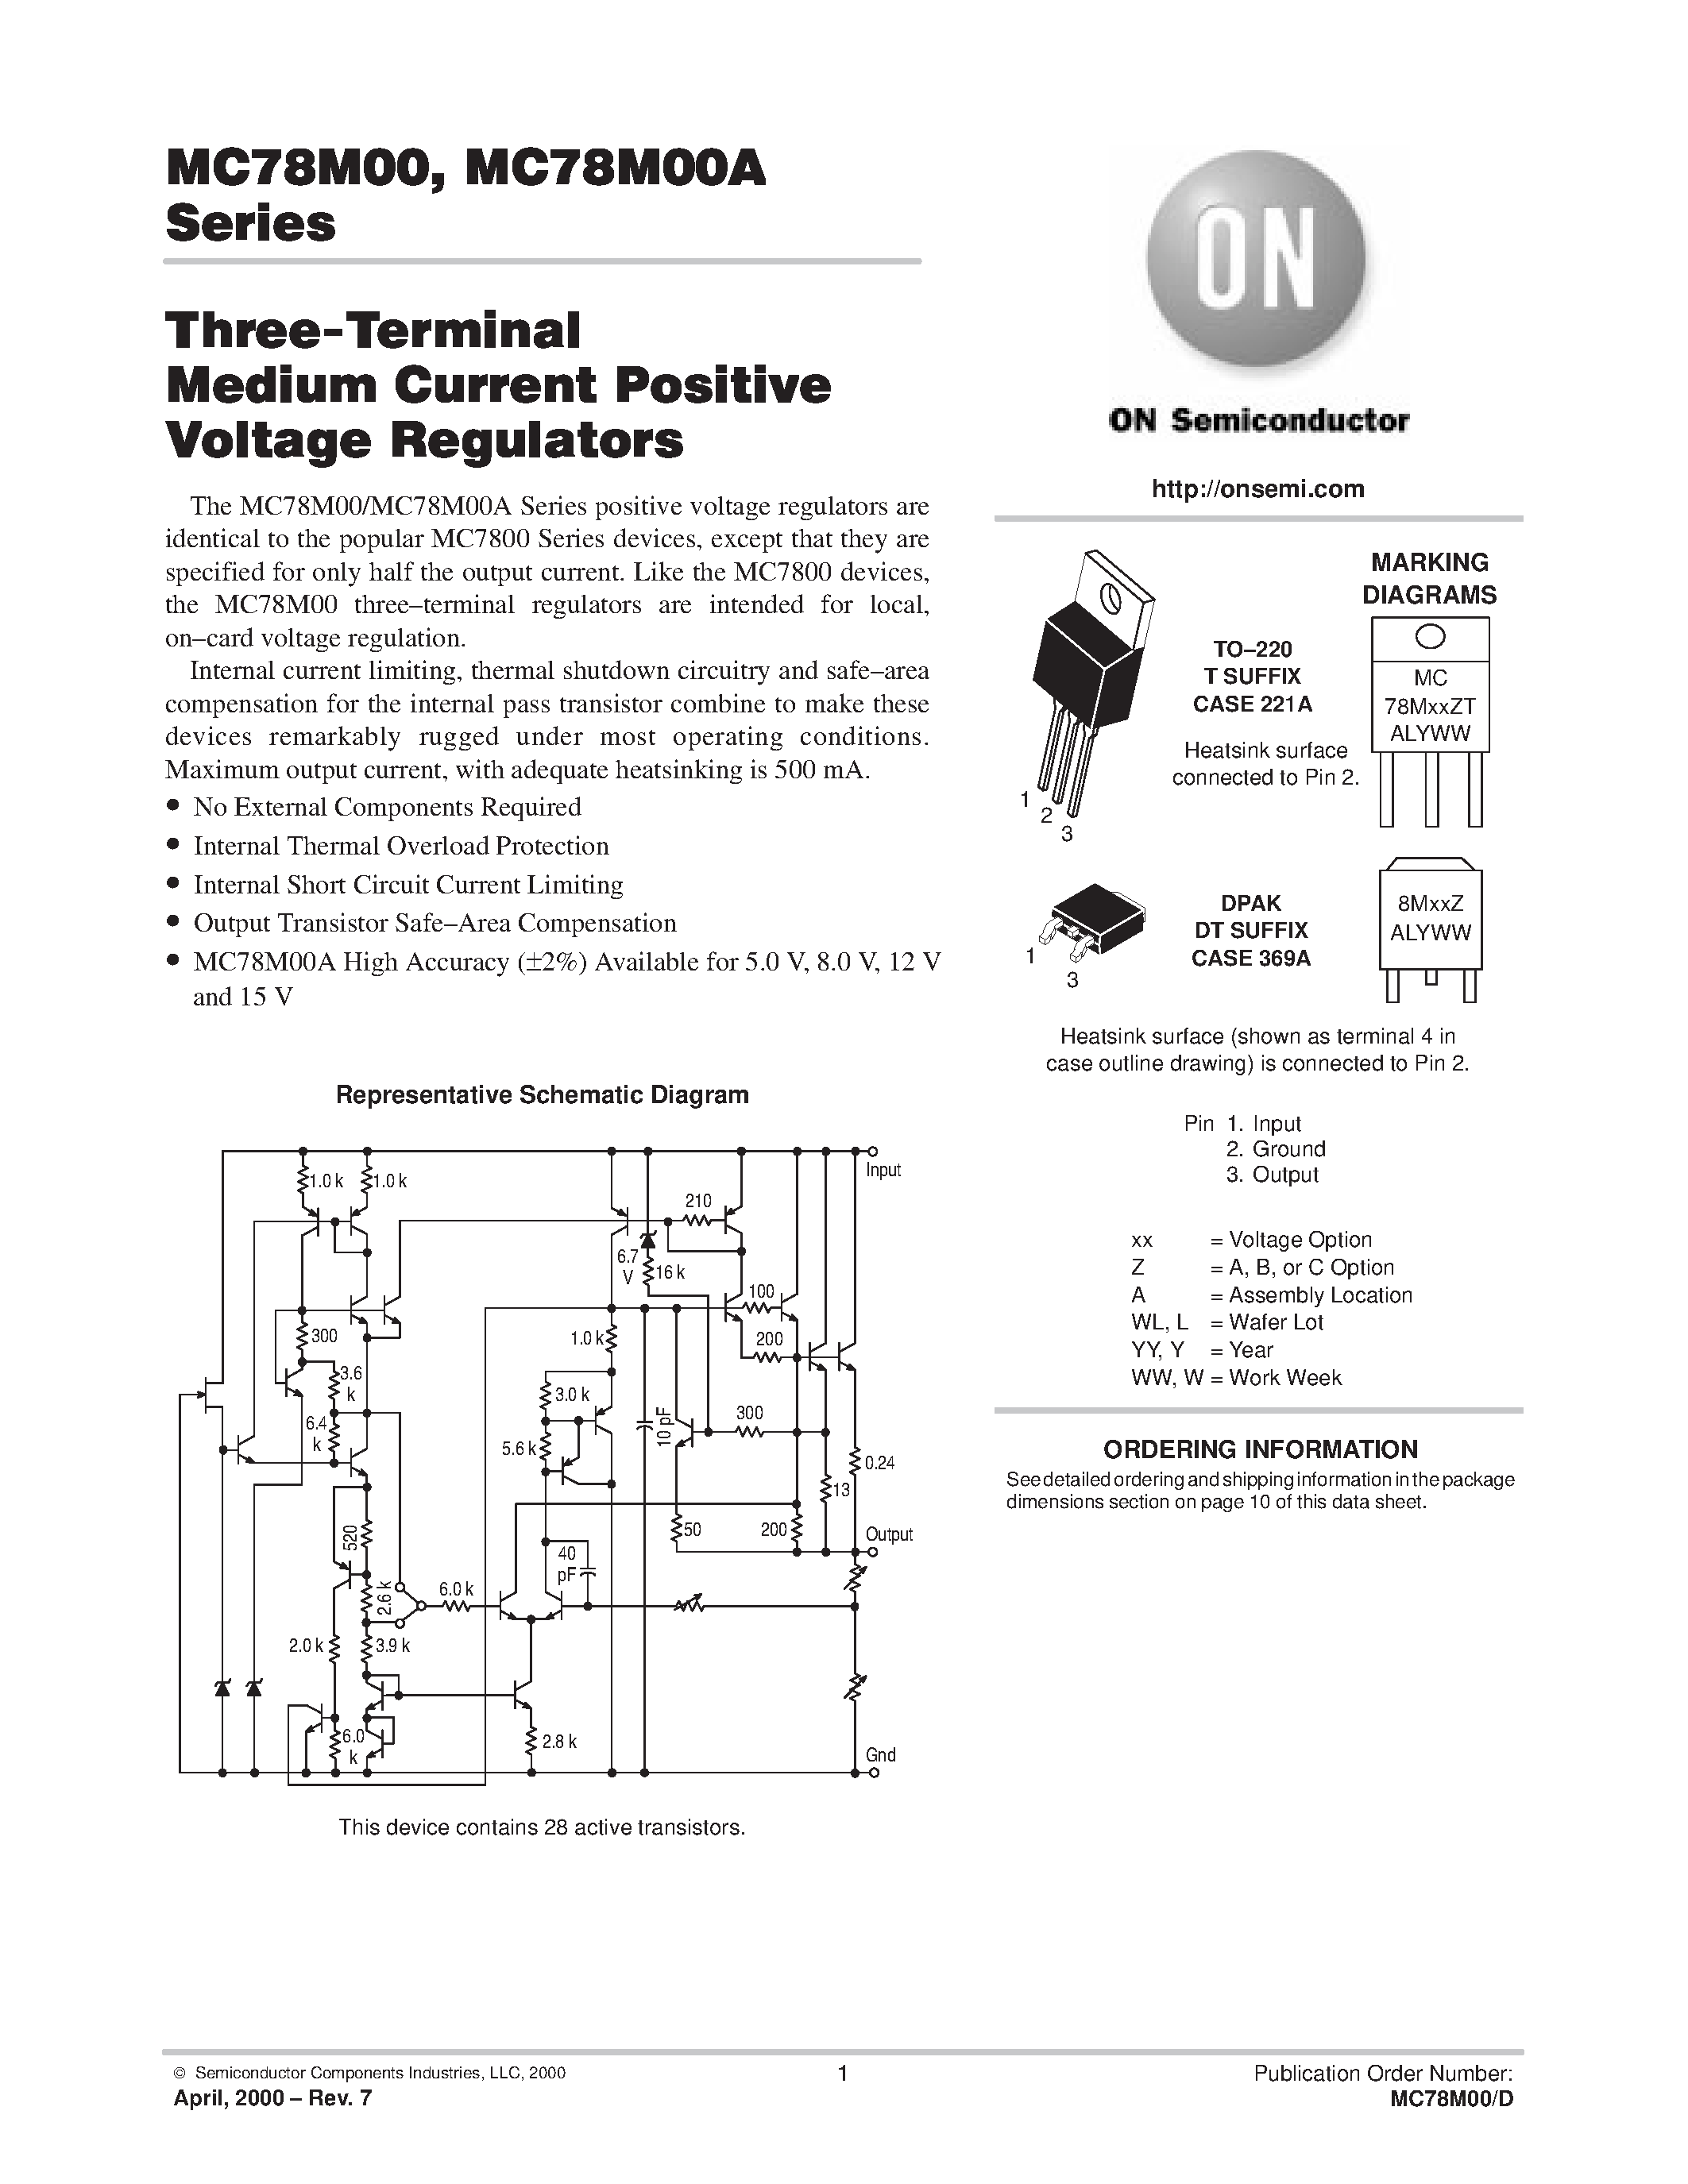 Даташит MC78M24BT - Three-Terminal MEDIUM Current Positive Voltage Regulators страница 1